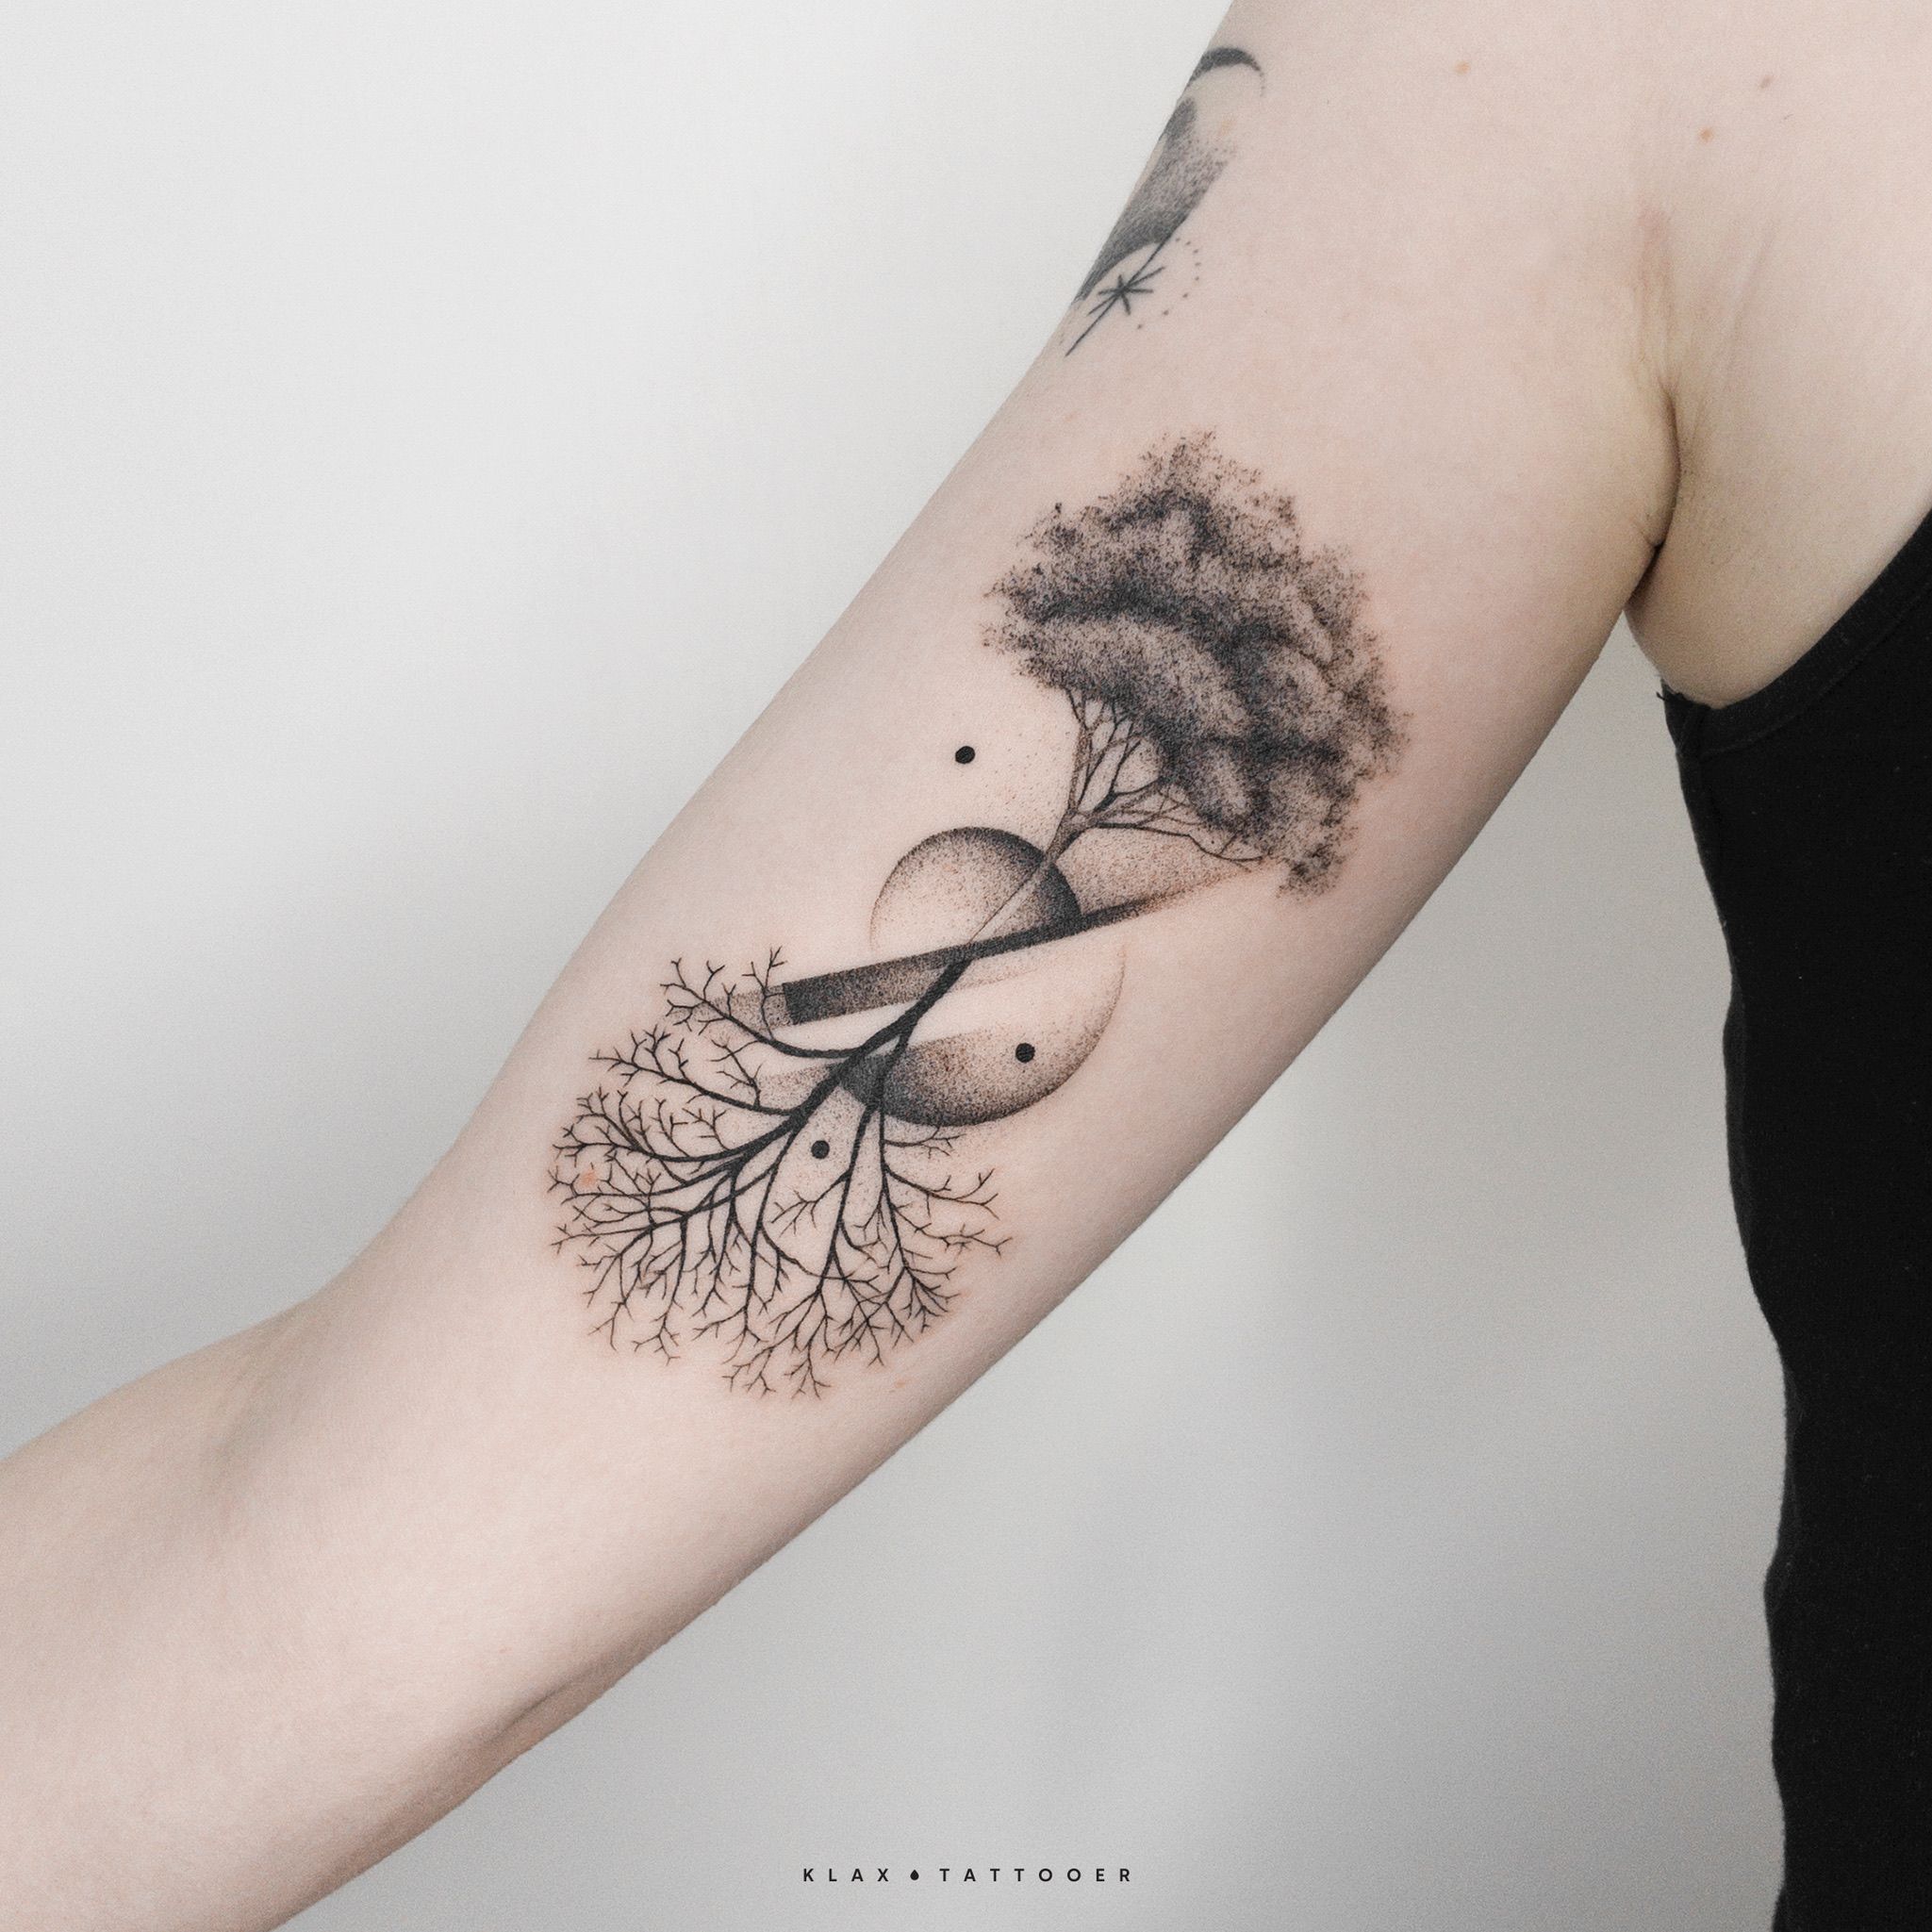 Tattoo uploaded by Klax Tattooer • Tree of life Tattoo • Tattoodo